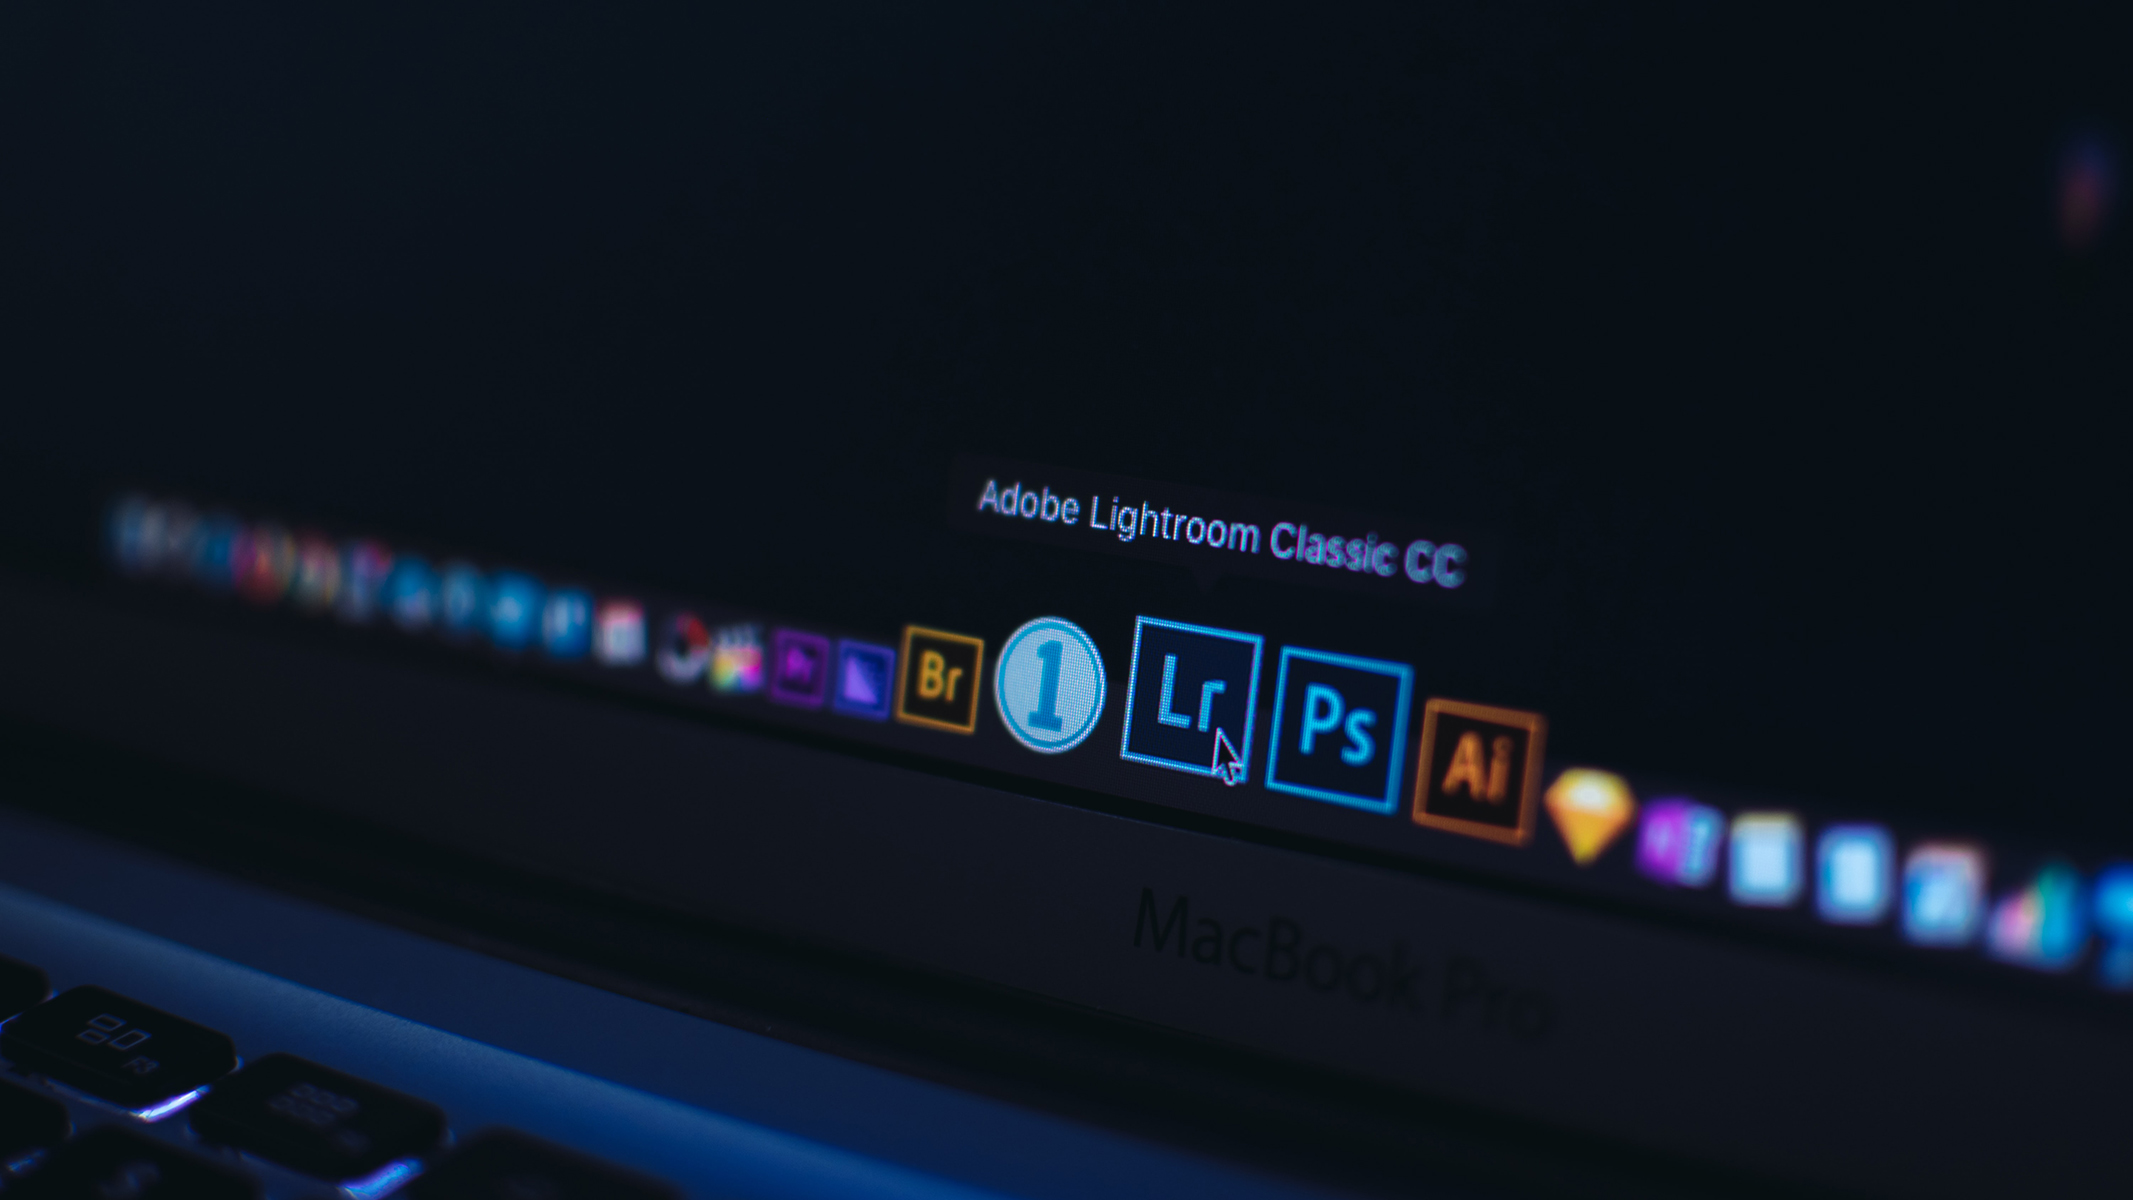 Adobe tung cập nhật Lightroom mới với nhiều tính năng và cải thiện hiệu năng